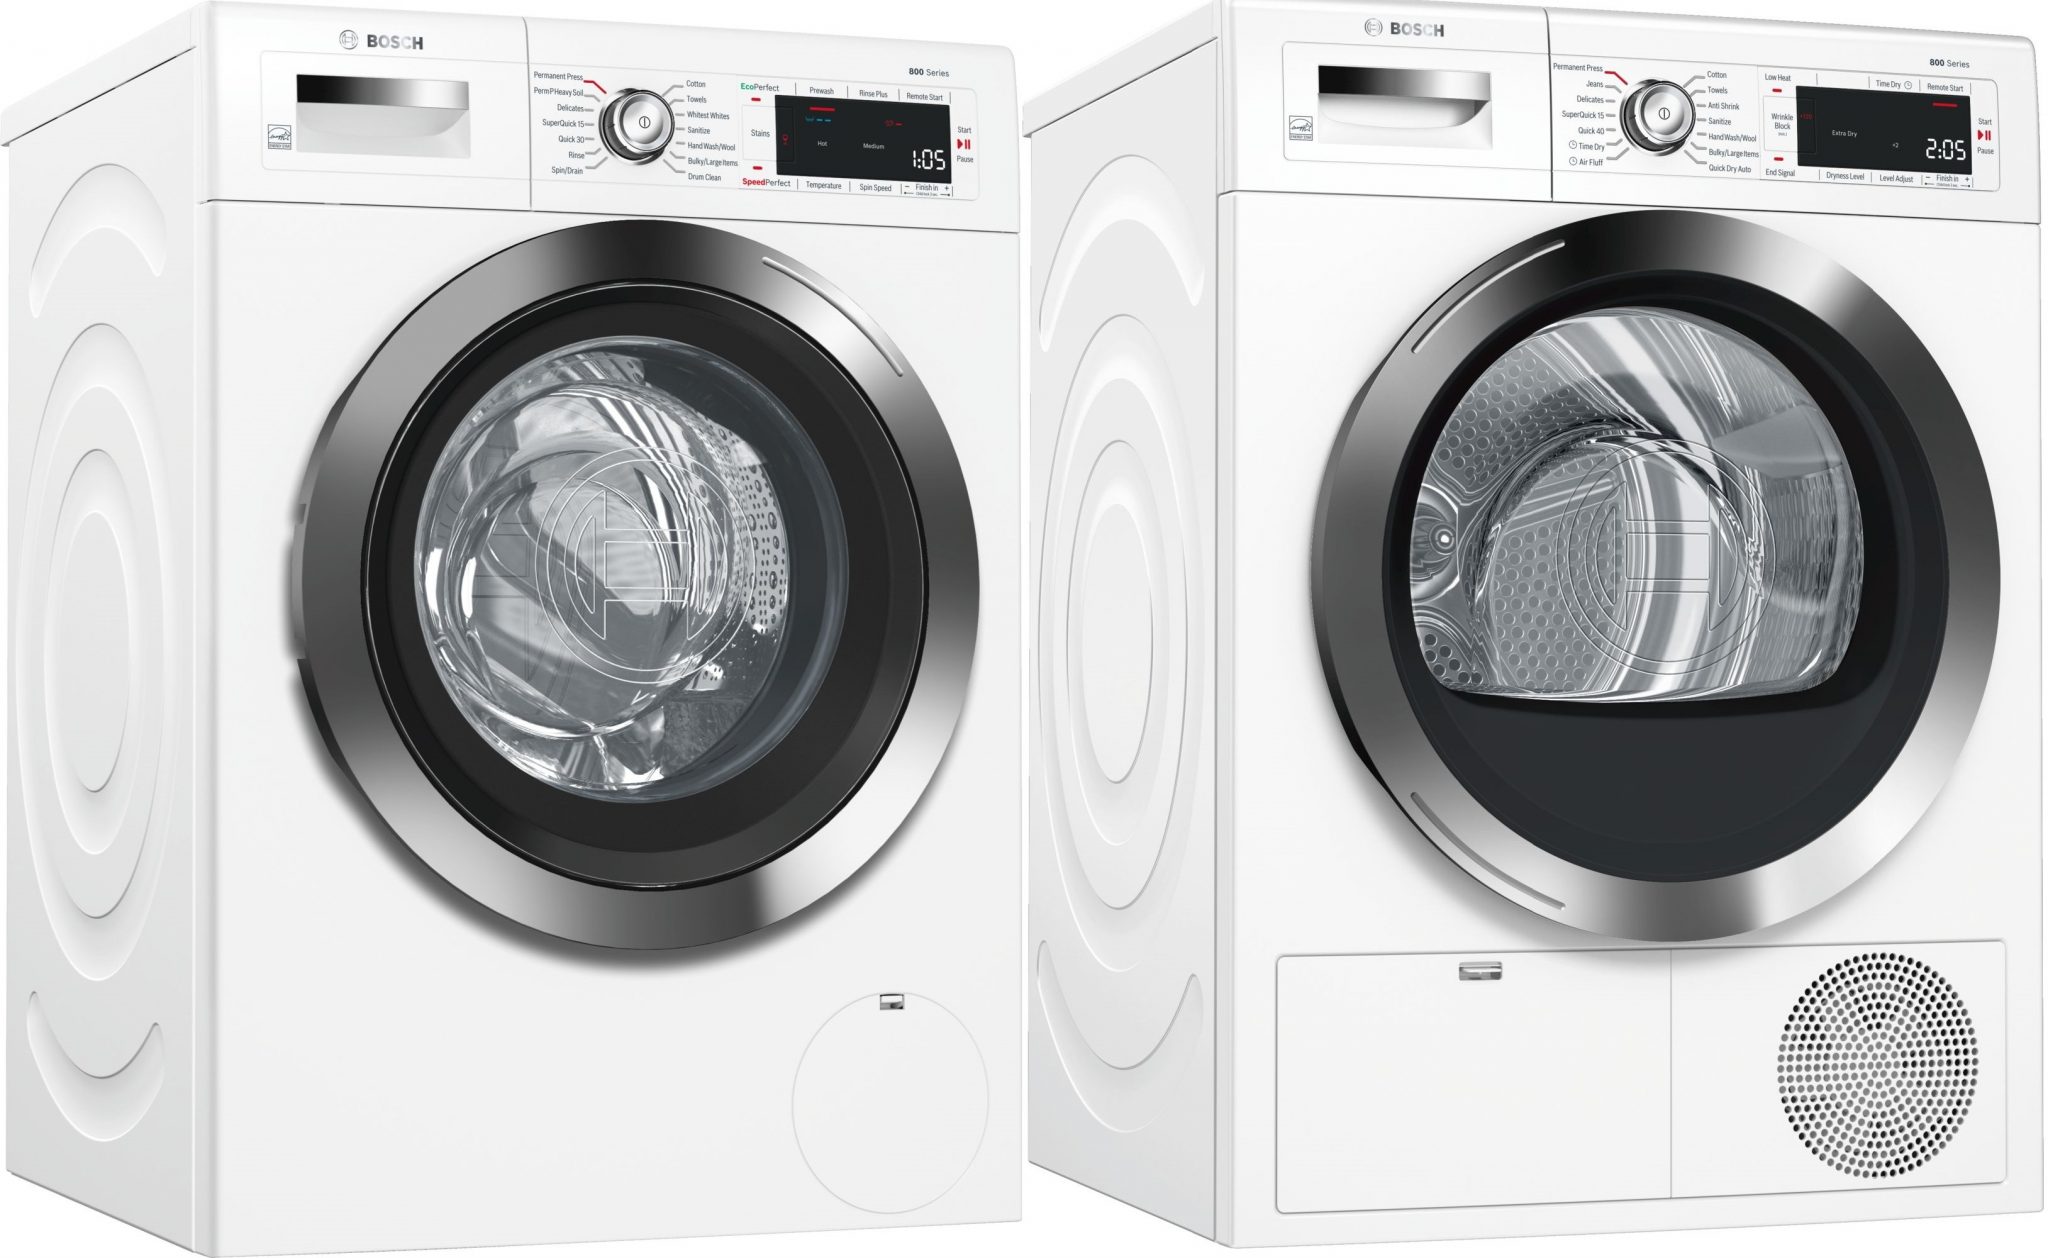 Bosch Washing Machine and Dryer